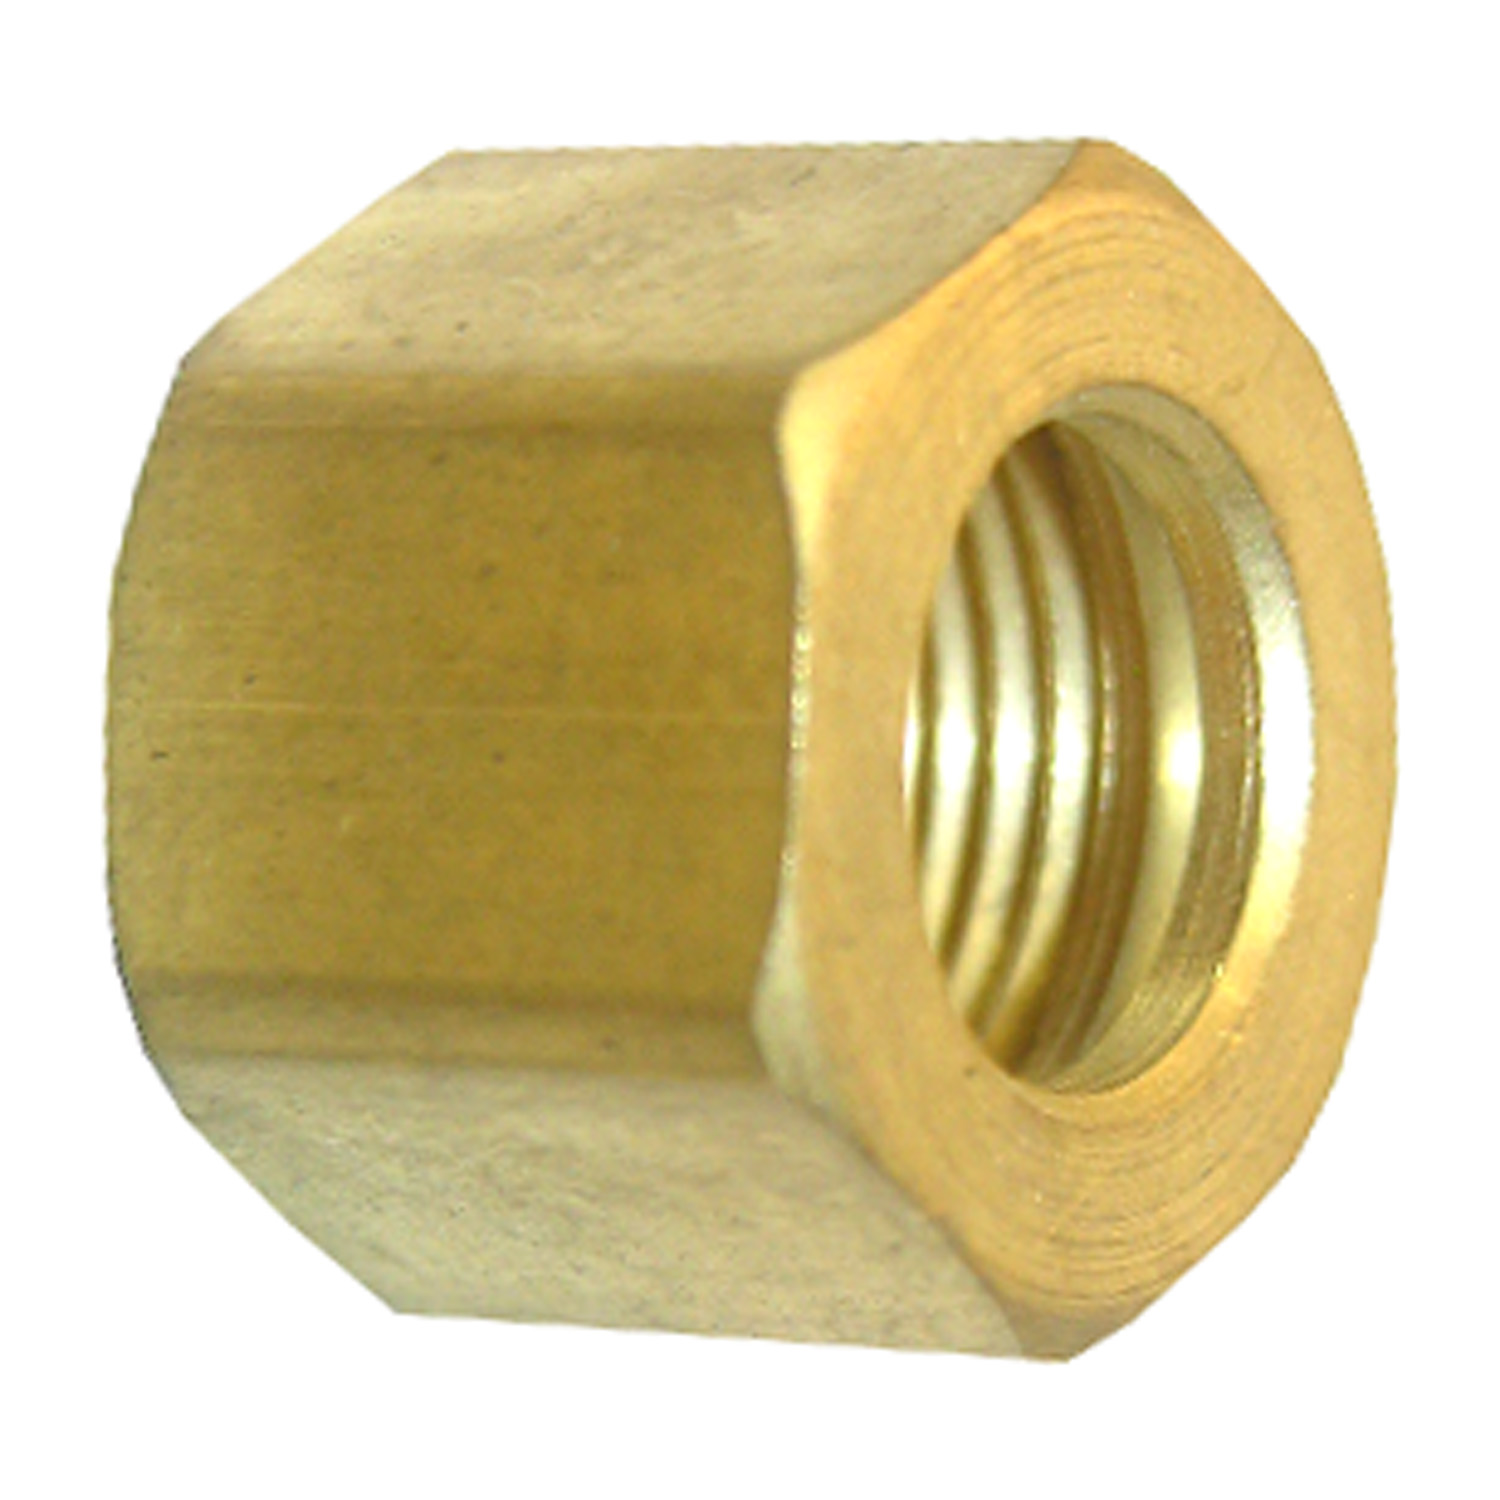 Lasco 17-6101 Nut, 1/8 in, Compression, Brass